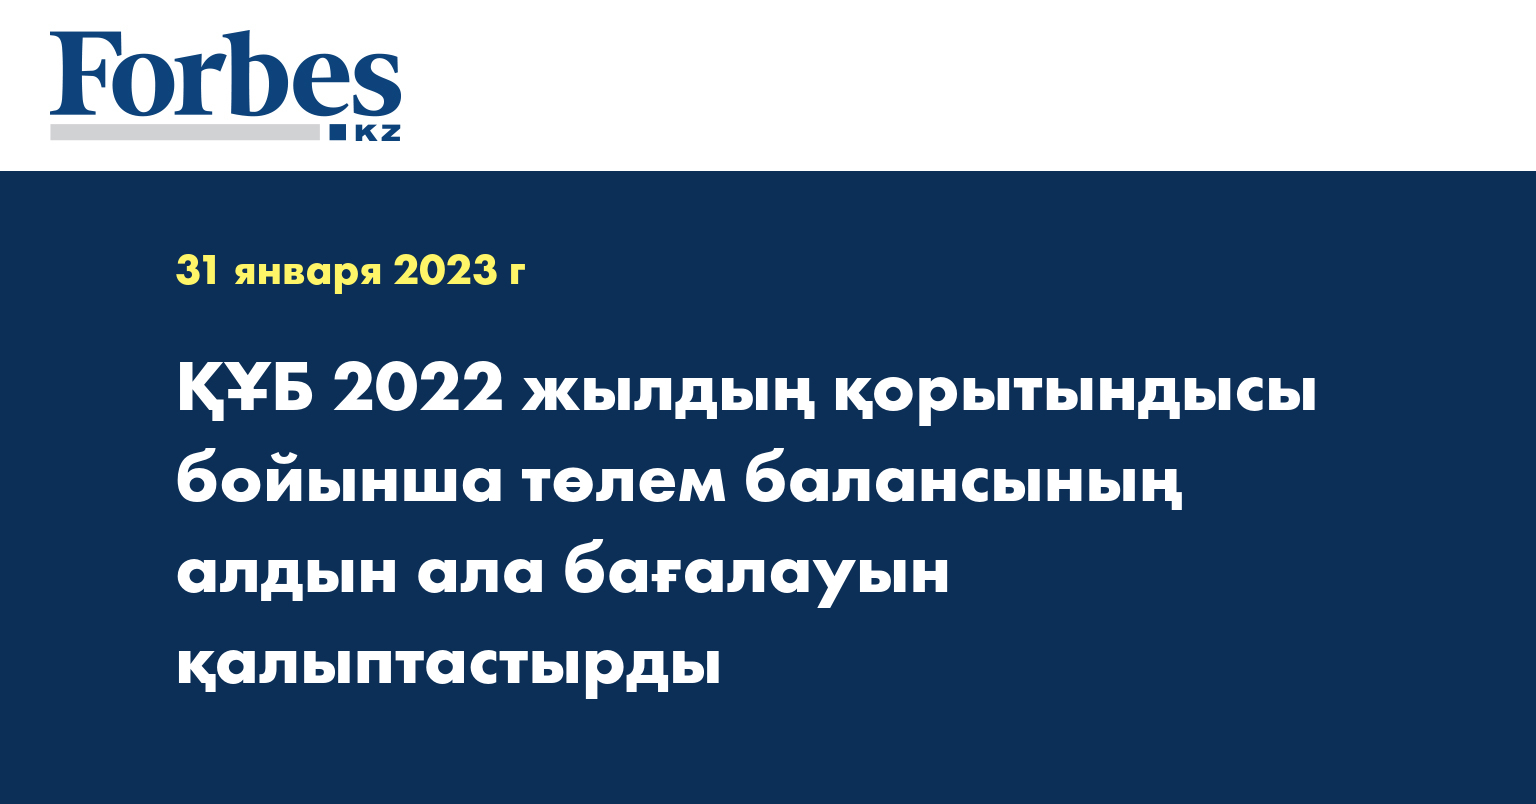 ҚҰБ 2022 жылдың қорытындысы бойынша төлем балансының алдын ала бағалауын қалыптастырды